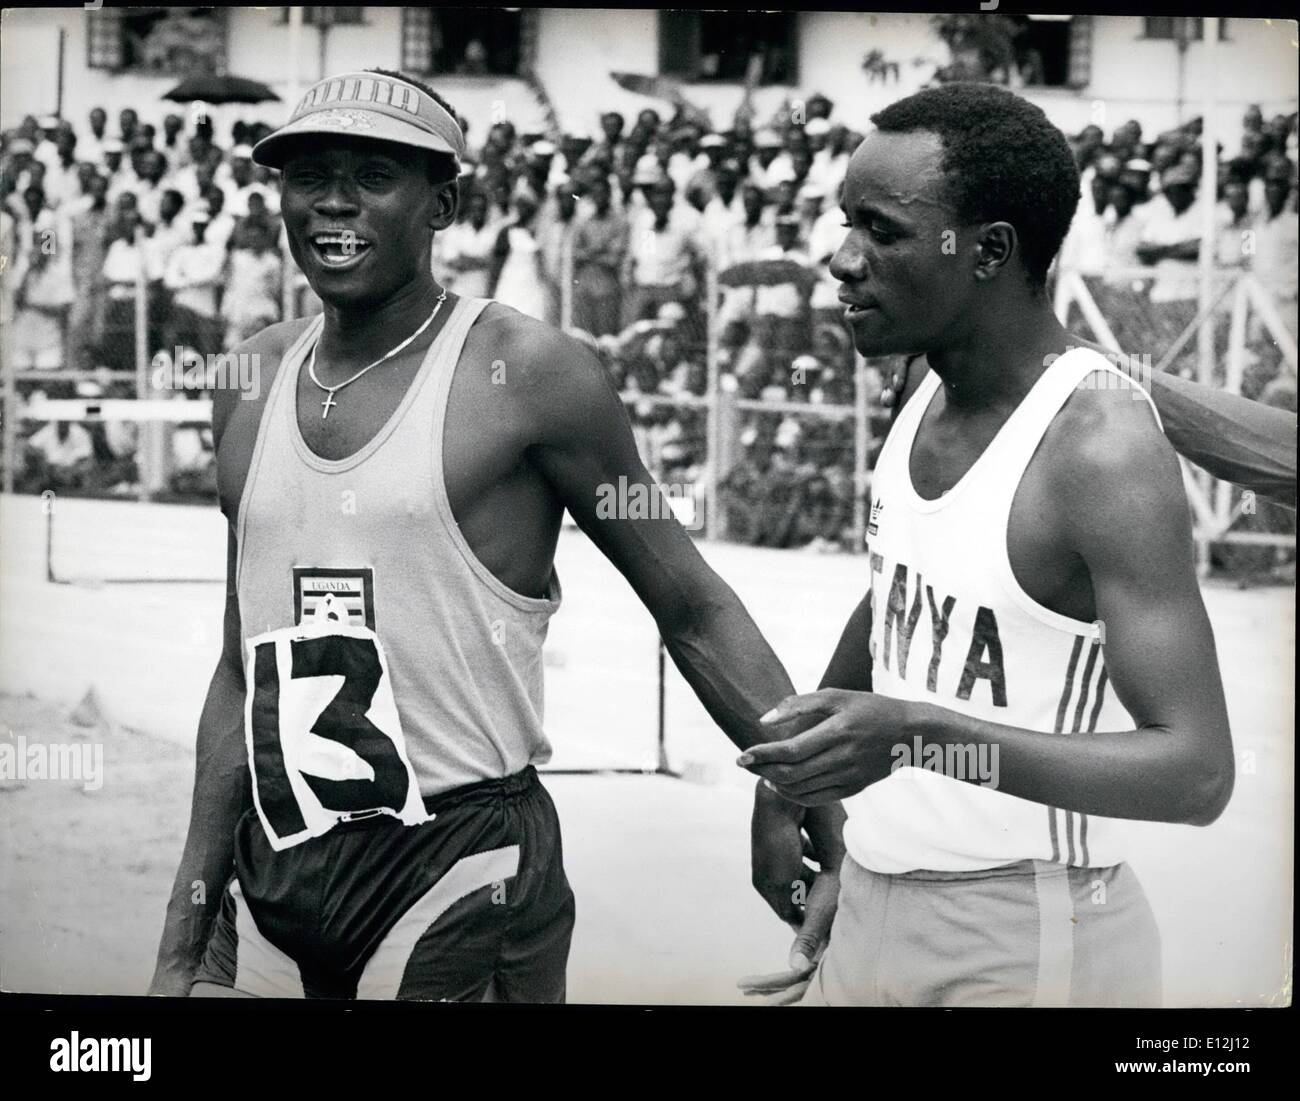 9. Januar 2012 - Uganda/Kenia: Sport John Akii-Bua. Der Weltrekordhalter und Olympiasieger im 400 m Hürdenlauf (47,8 sec). mit William Koskei (rechts) von Kenia. 400 Meter Hürdenläufer mit Silbermedaille Commonwealth Spiele 1972. Auch Kenia Rekordhalter. Kredit: Camerapix Stockfoto